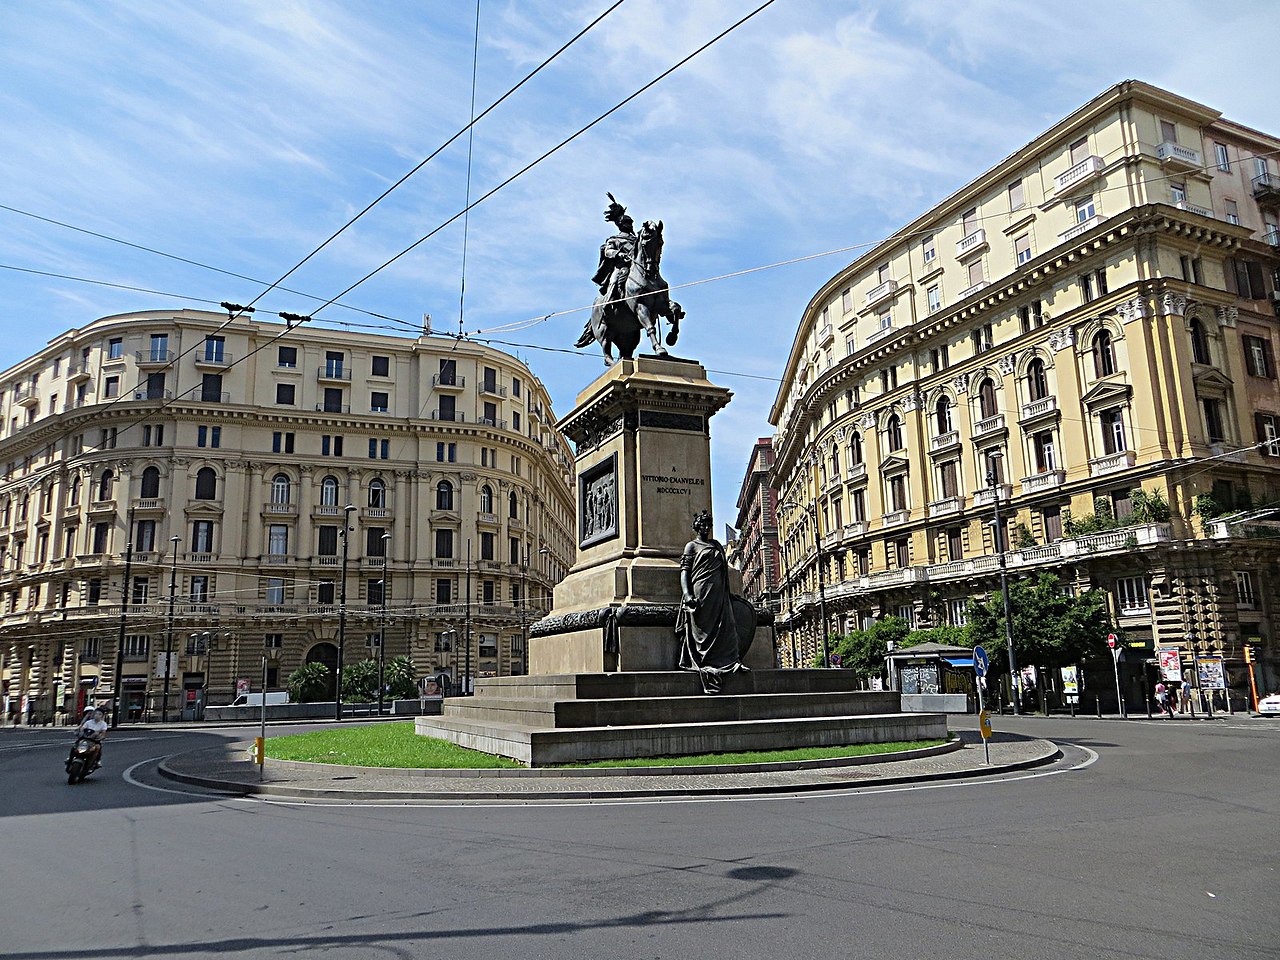 https://it.wikipedia.org/wiki/Risanamento_di_Napoli#/media/File:Piazza_Giovanni_Bovio_-_panoramio_(1).jpg